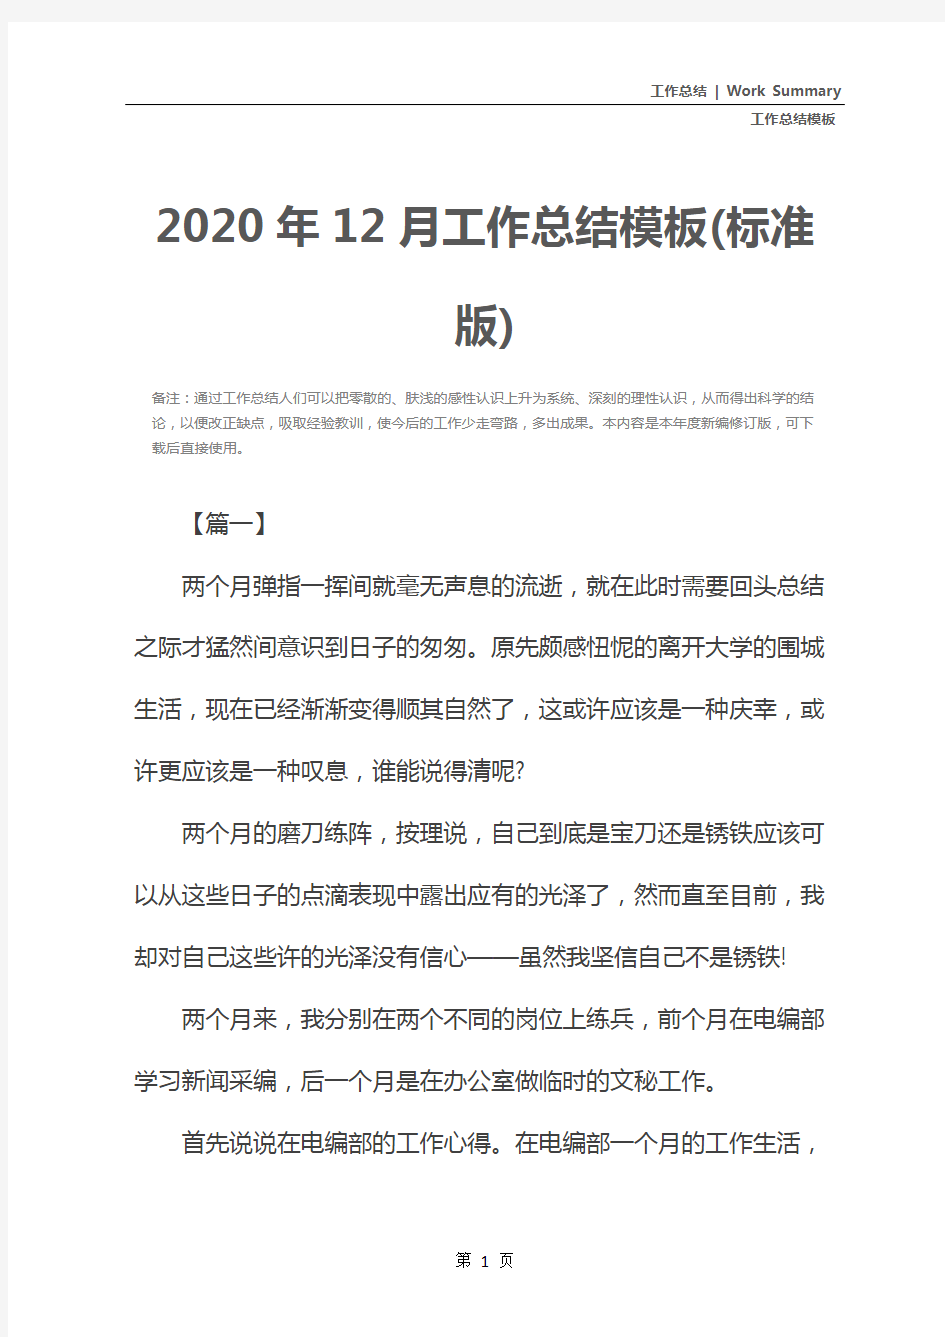 2020年12月工作总结模板(标准版)